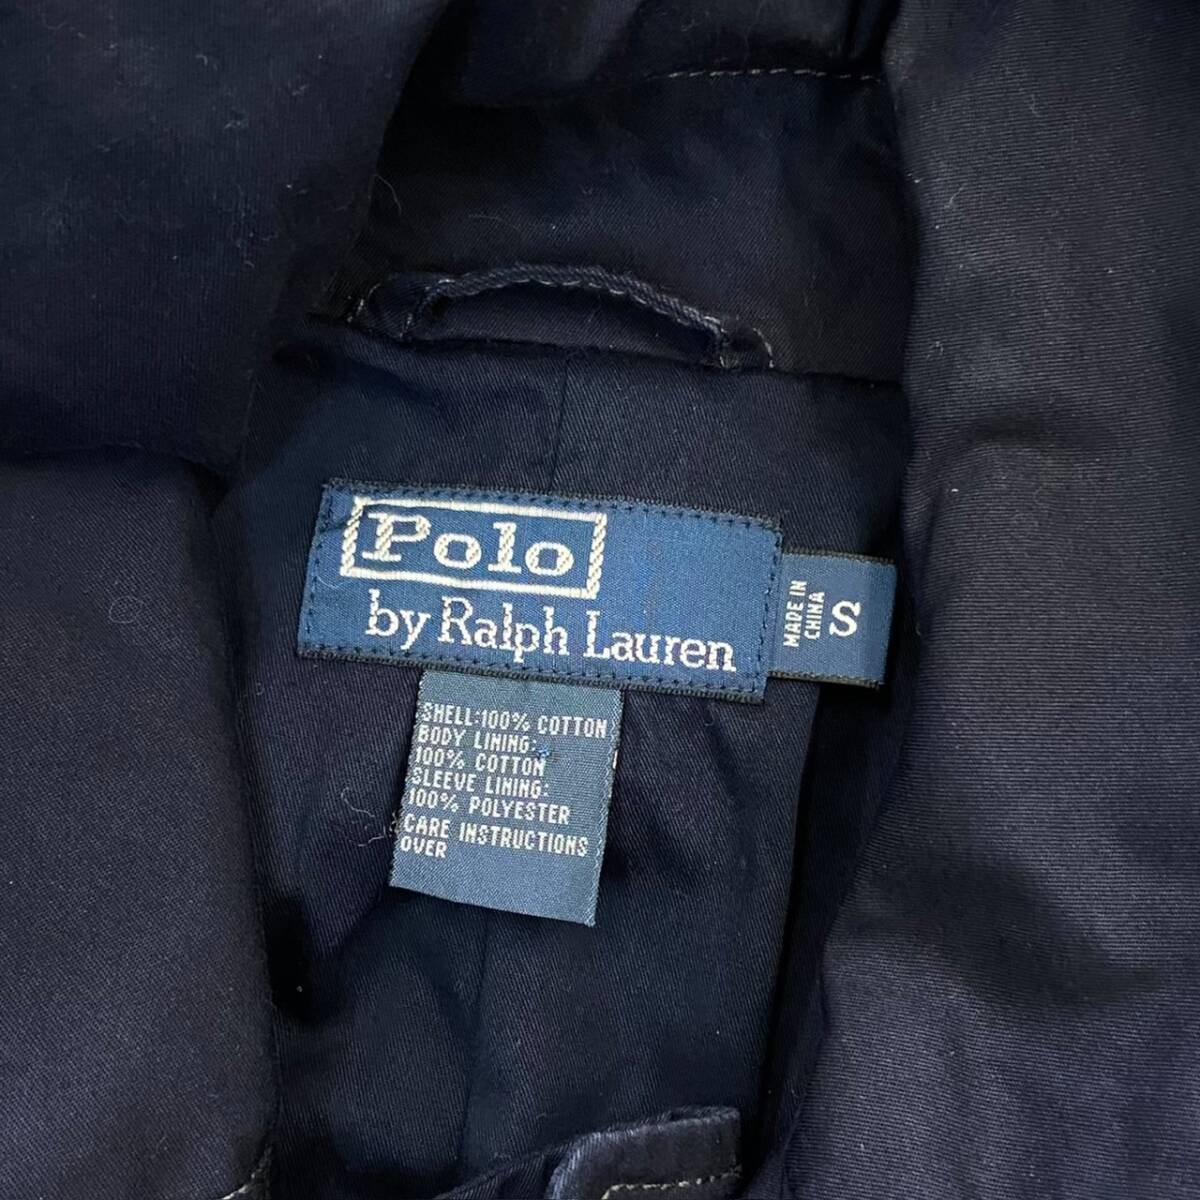 Polo Ralph Lauren тренчкот S темно-синий двойной breast Polo Ralph Lauren жакет tailored jacket пальто с отложным воротником 